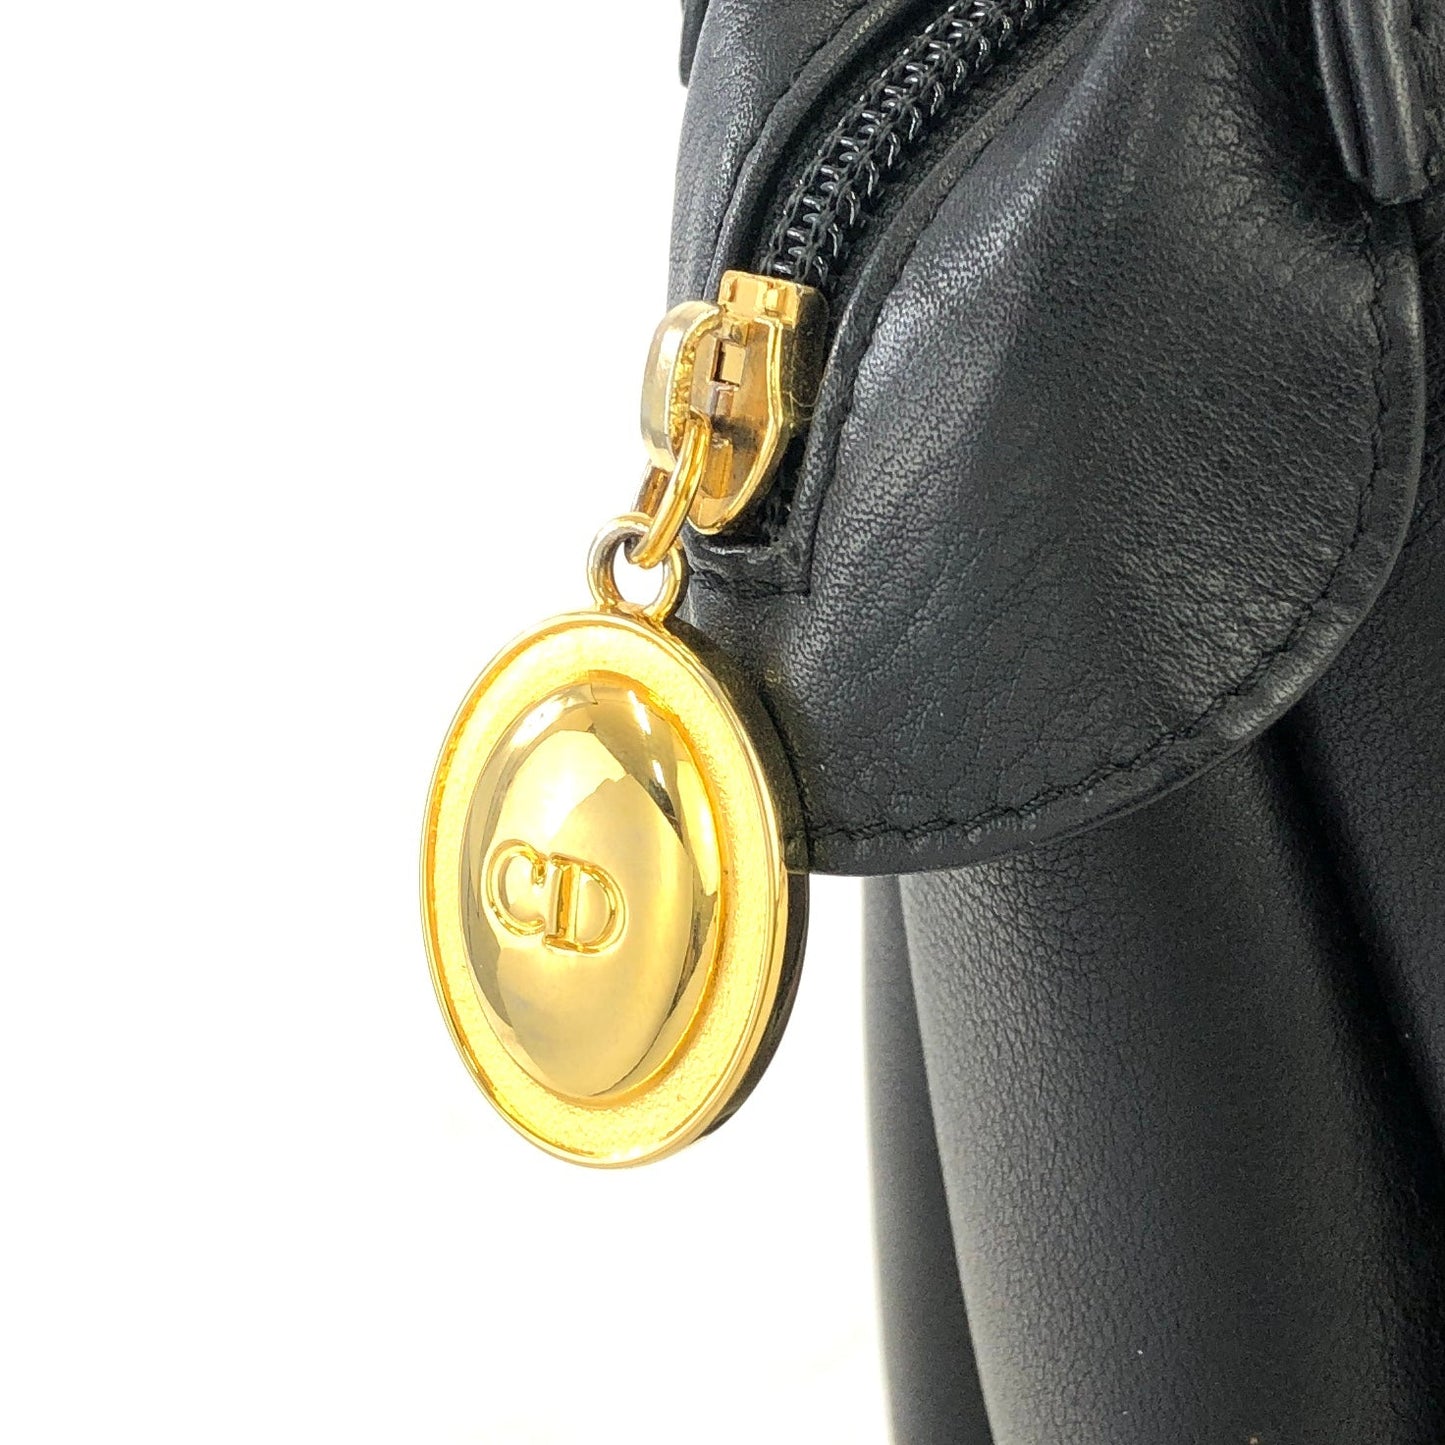 Christian Dior CD logo Leather Totebag Shoulderbag Black Vintage x3b2j4